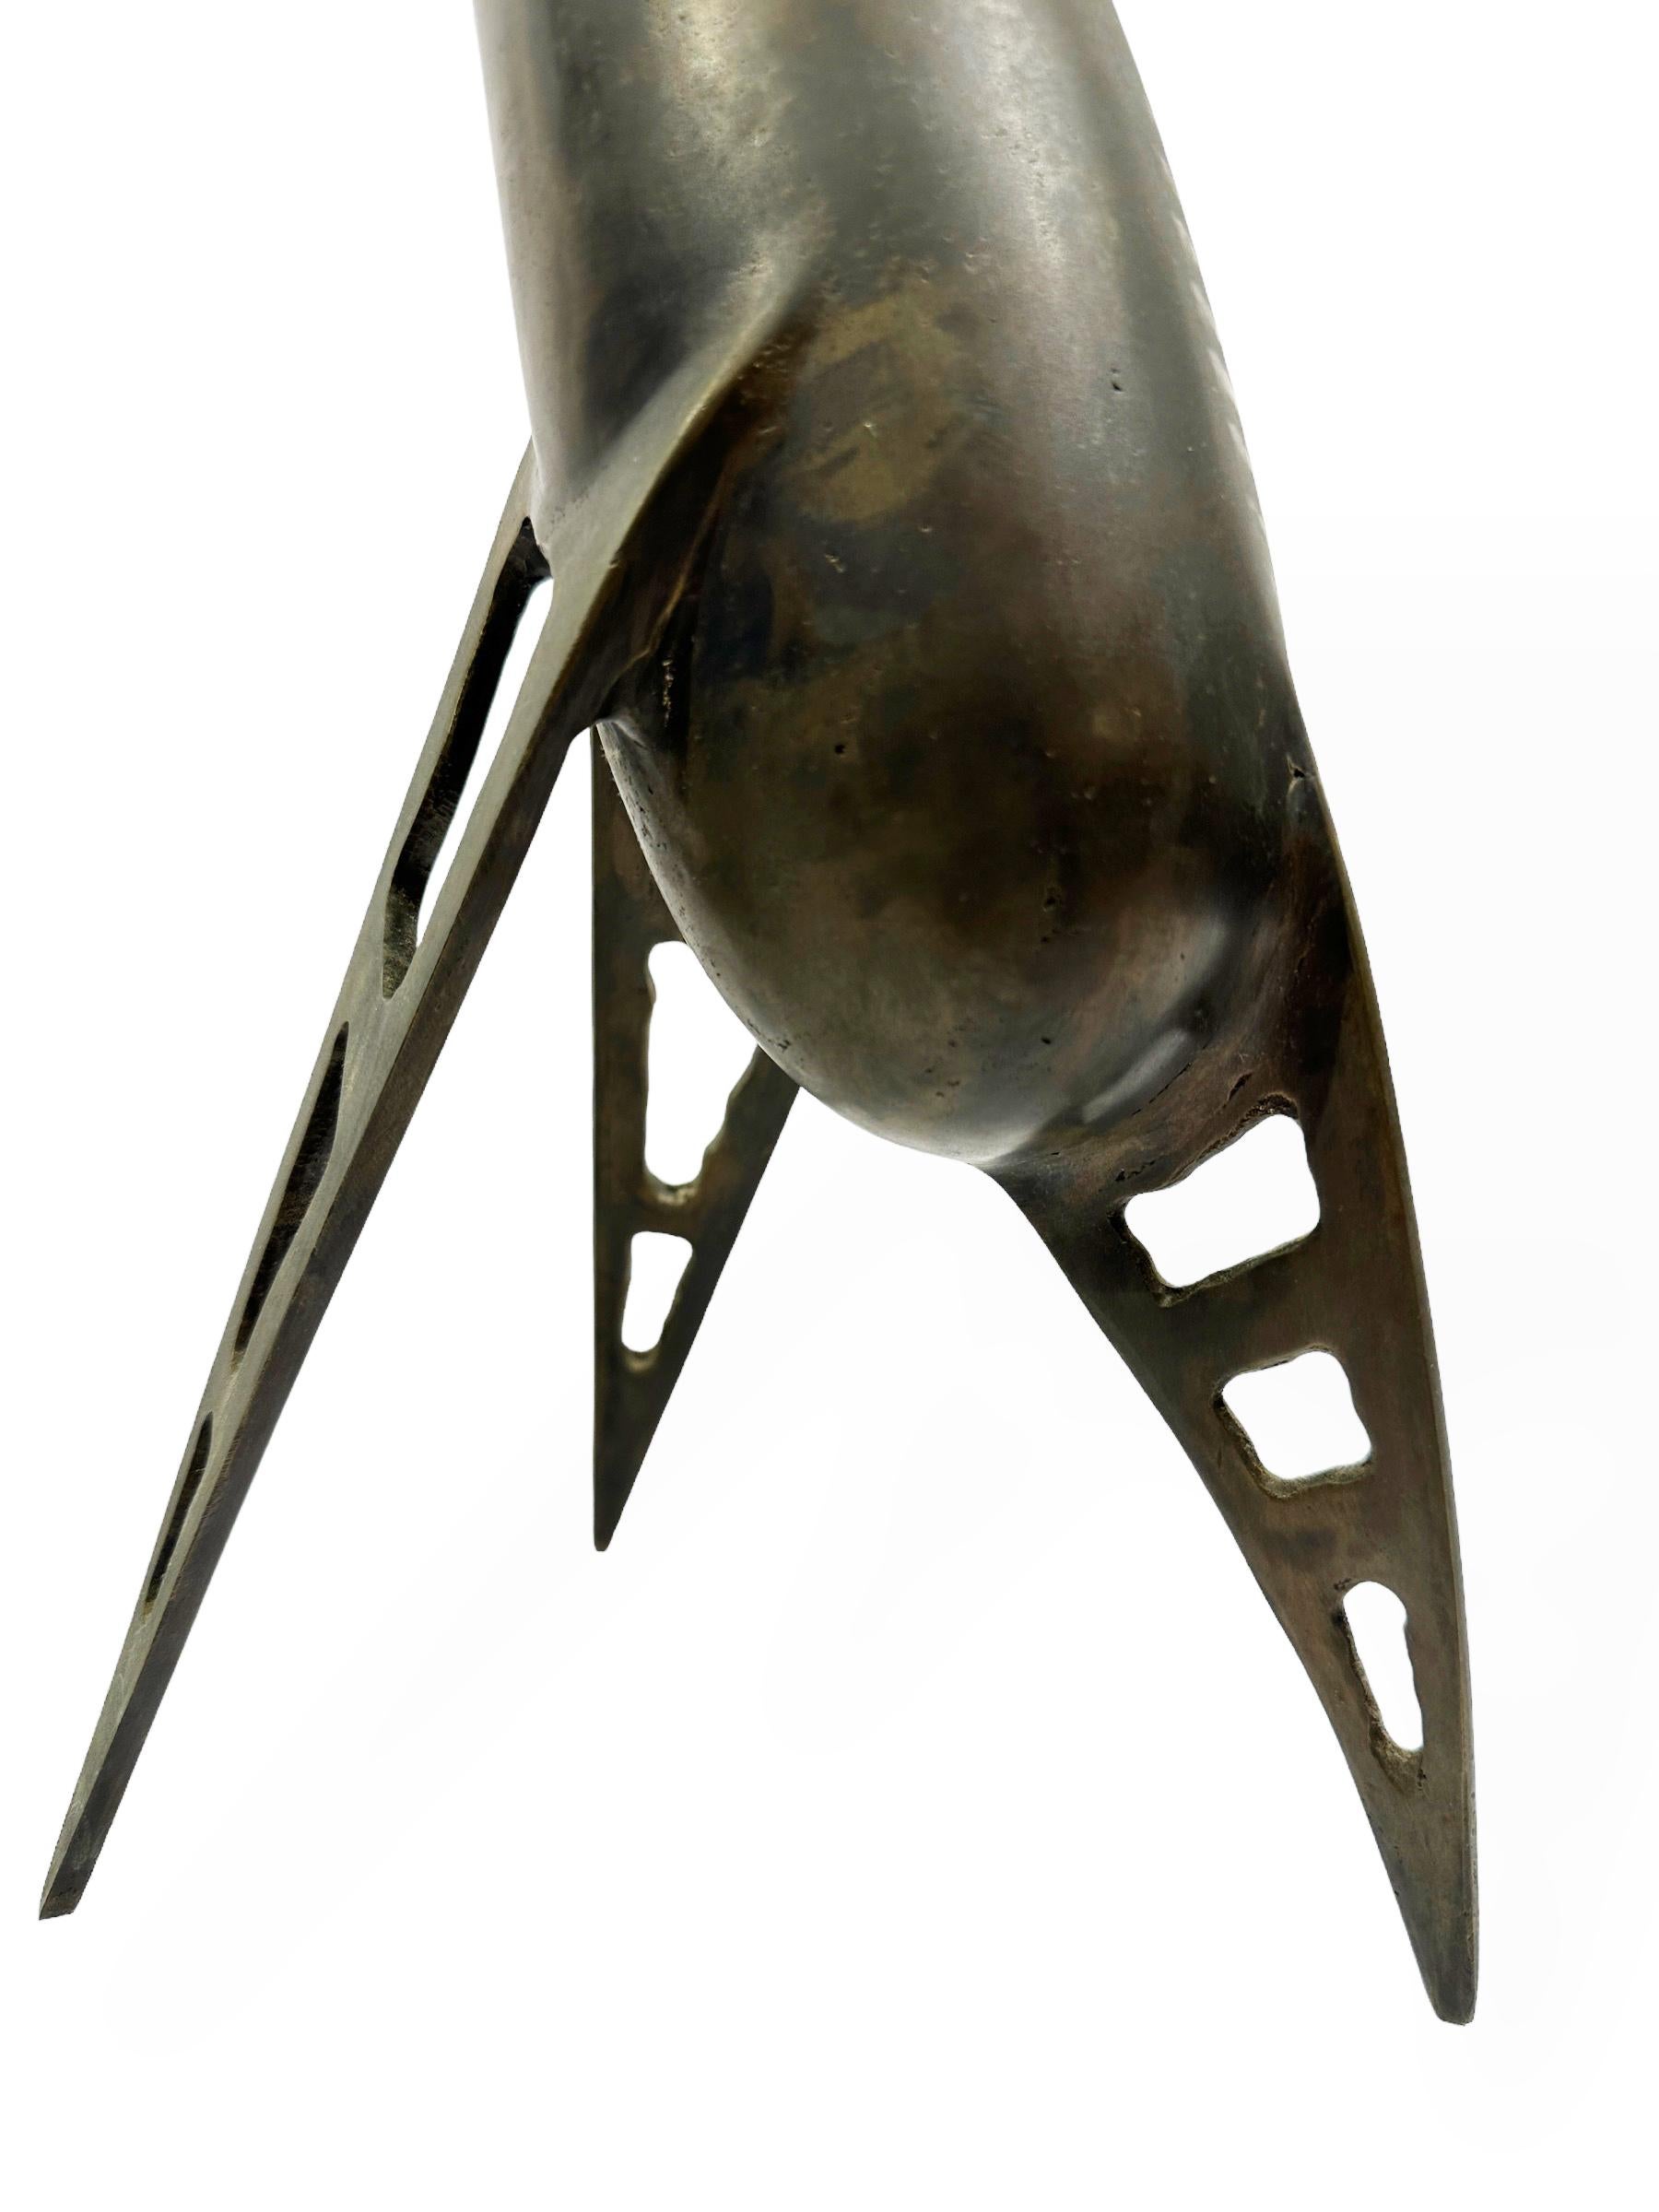 Bronze Vessel, Sculptural Object by Raju Peddada - 